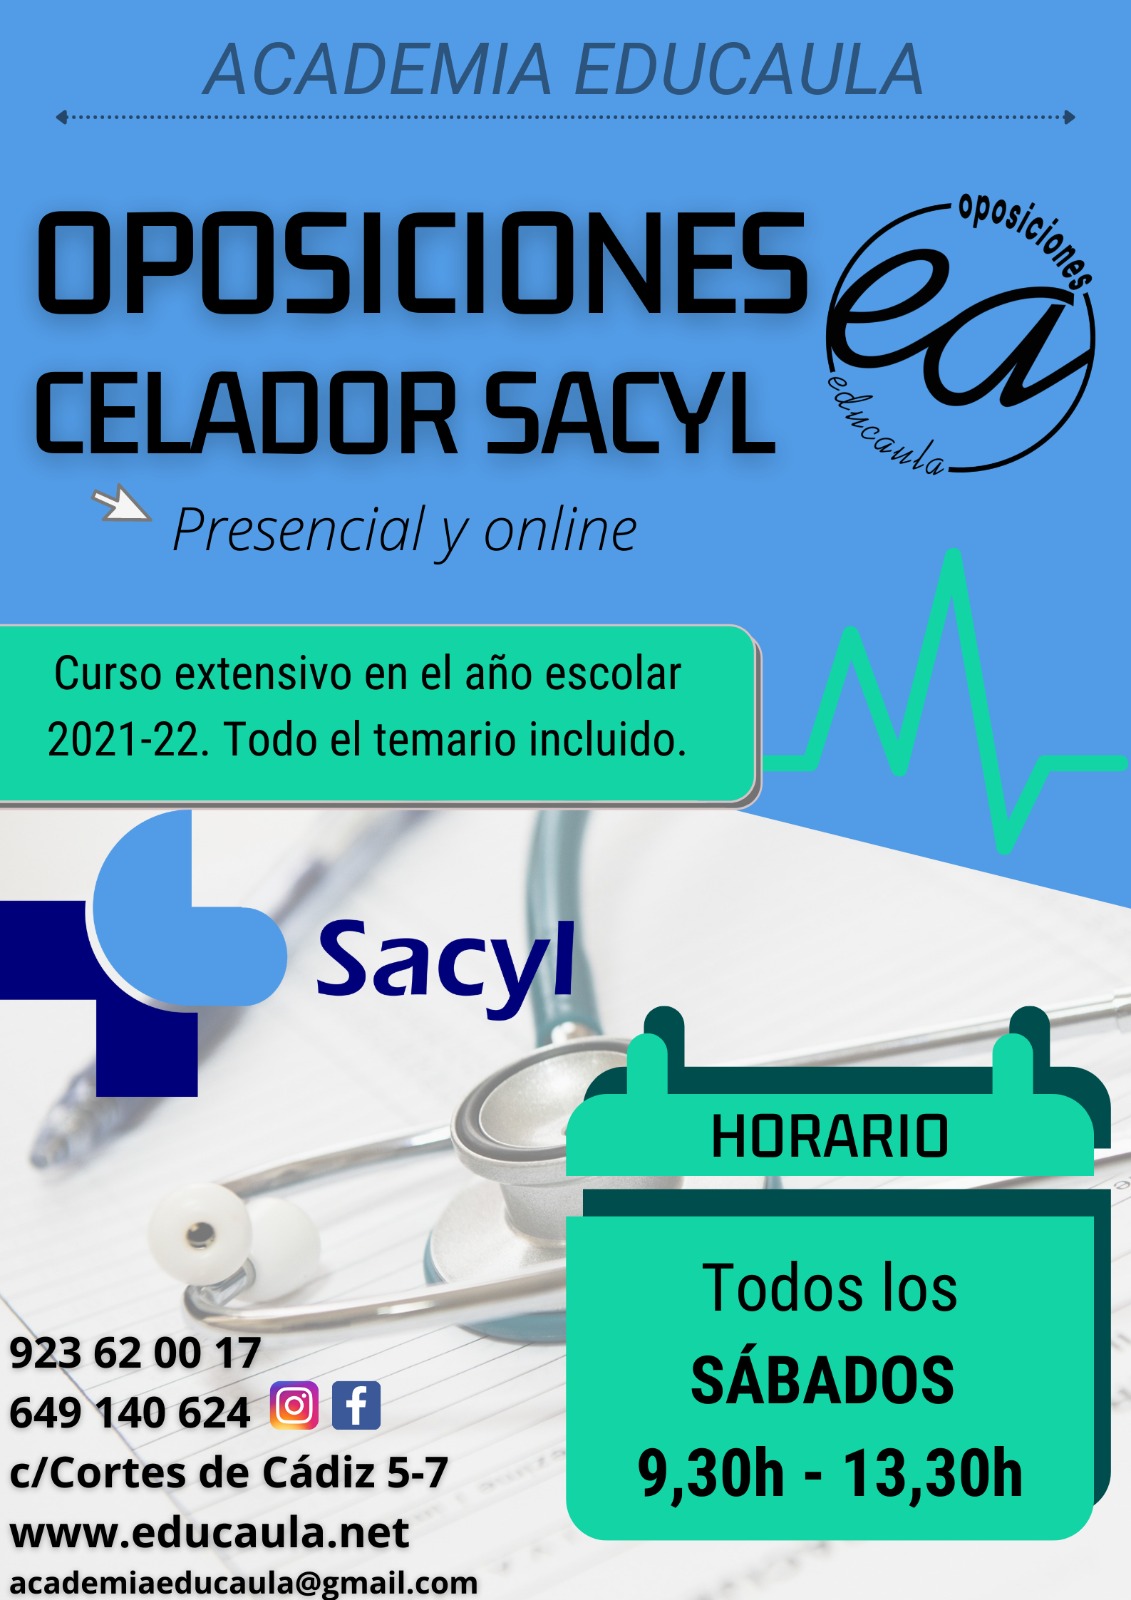 EDUCAULA PREPARA OPOSICIONES A CELADOR 2021-22 (PRESENCIAL Y ONLINE). COMIENZO EL 23 OCTUBRE.